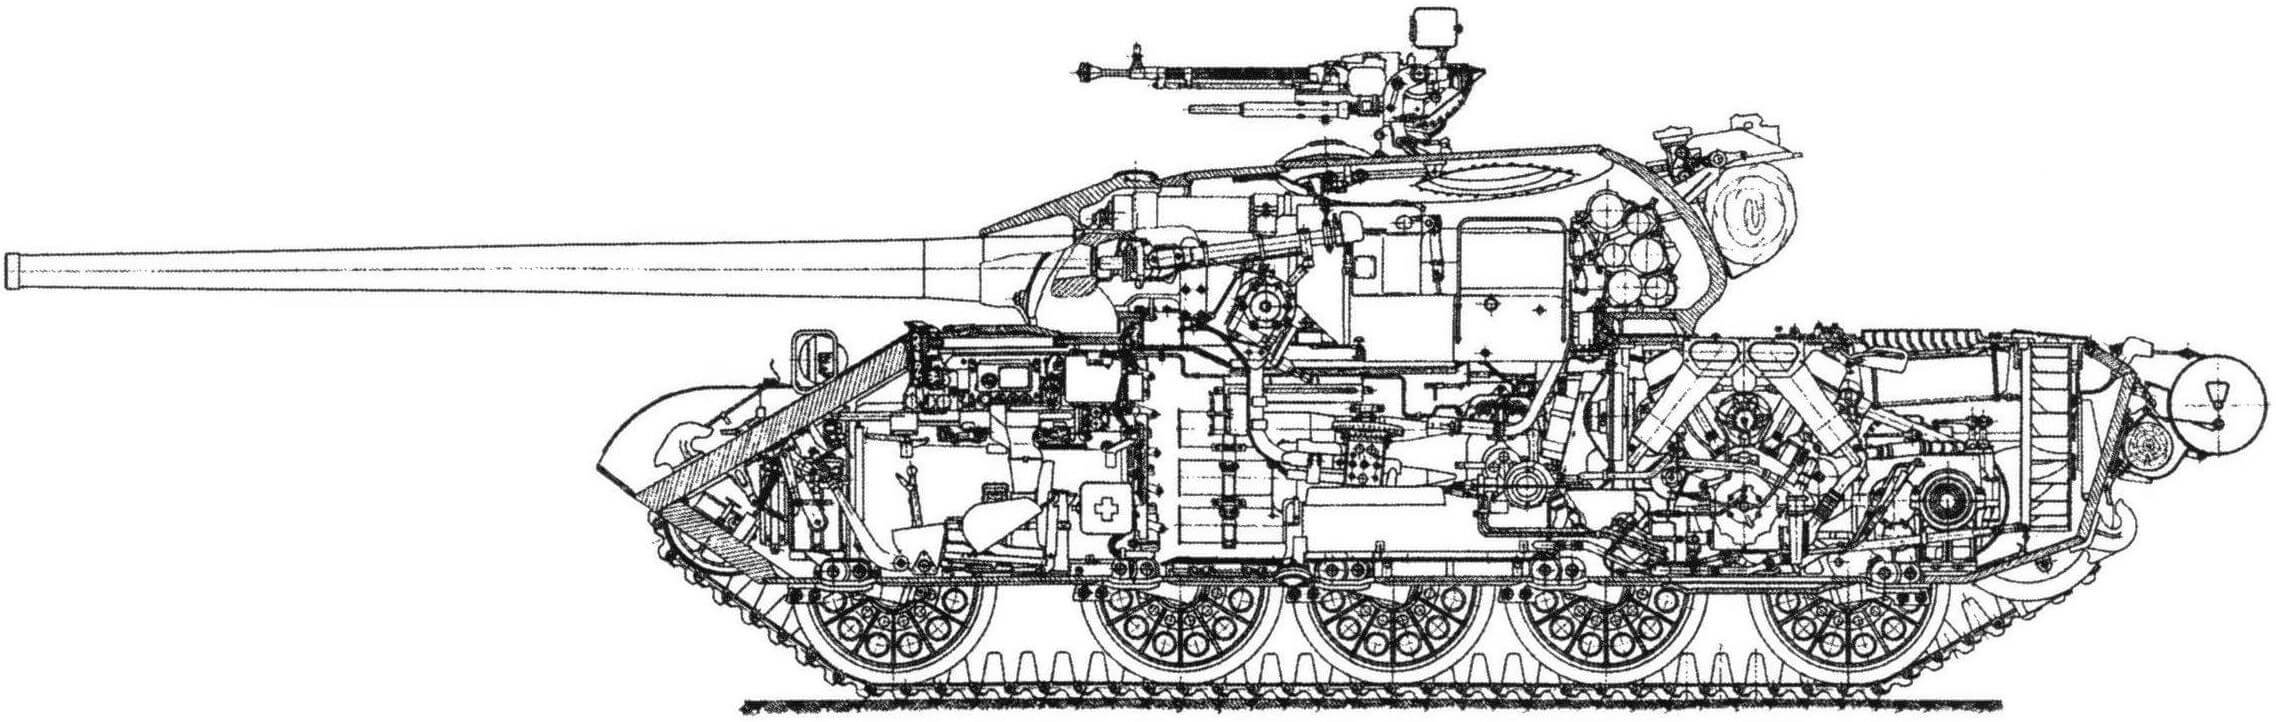 Продольный разрез танка Т-54 образца 1949 года